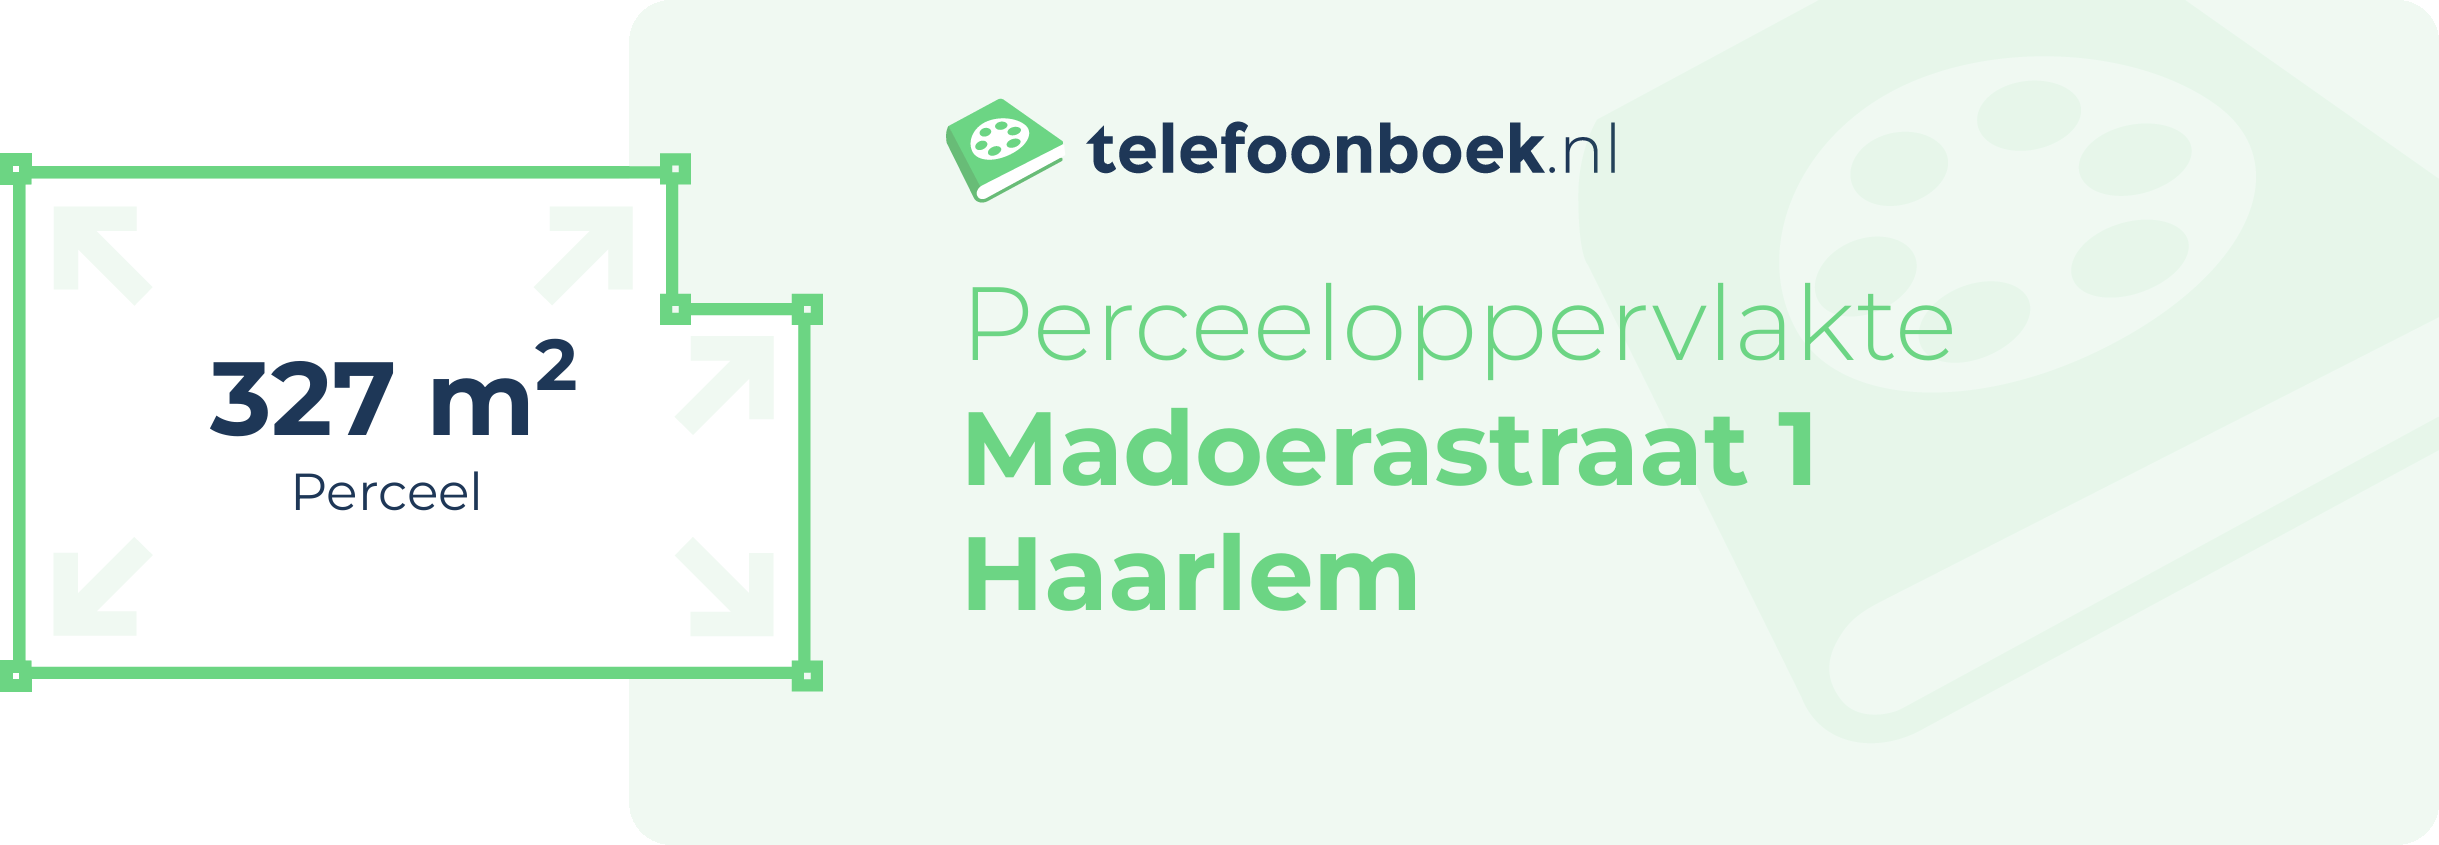 Perceeloppervlakte Madoerastraat 1 Haarlem